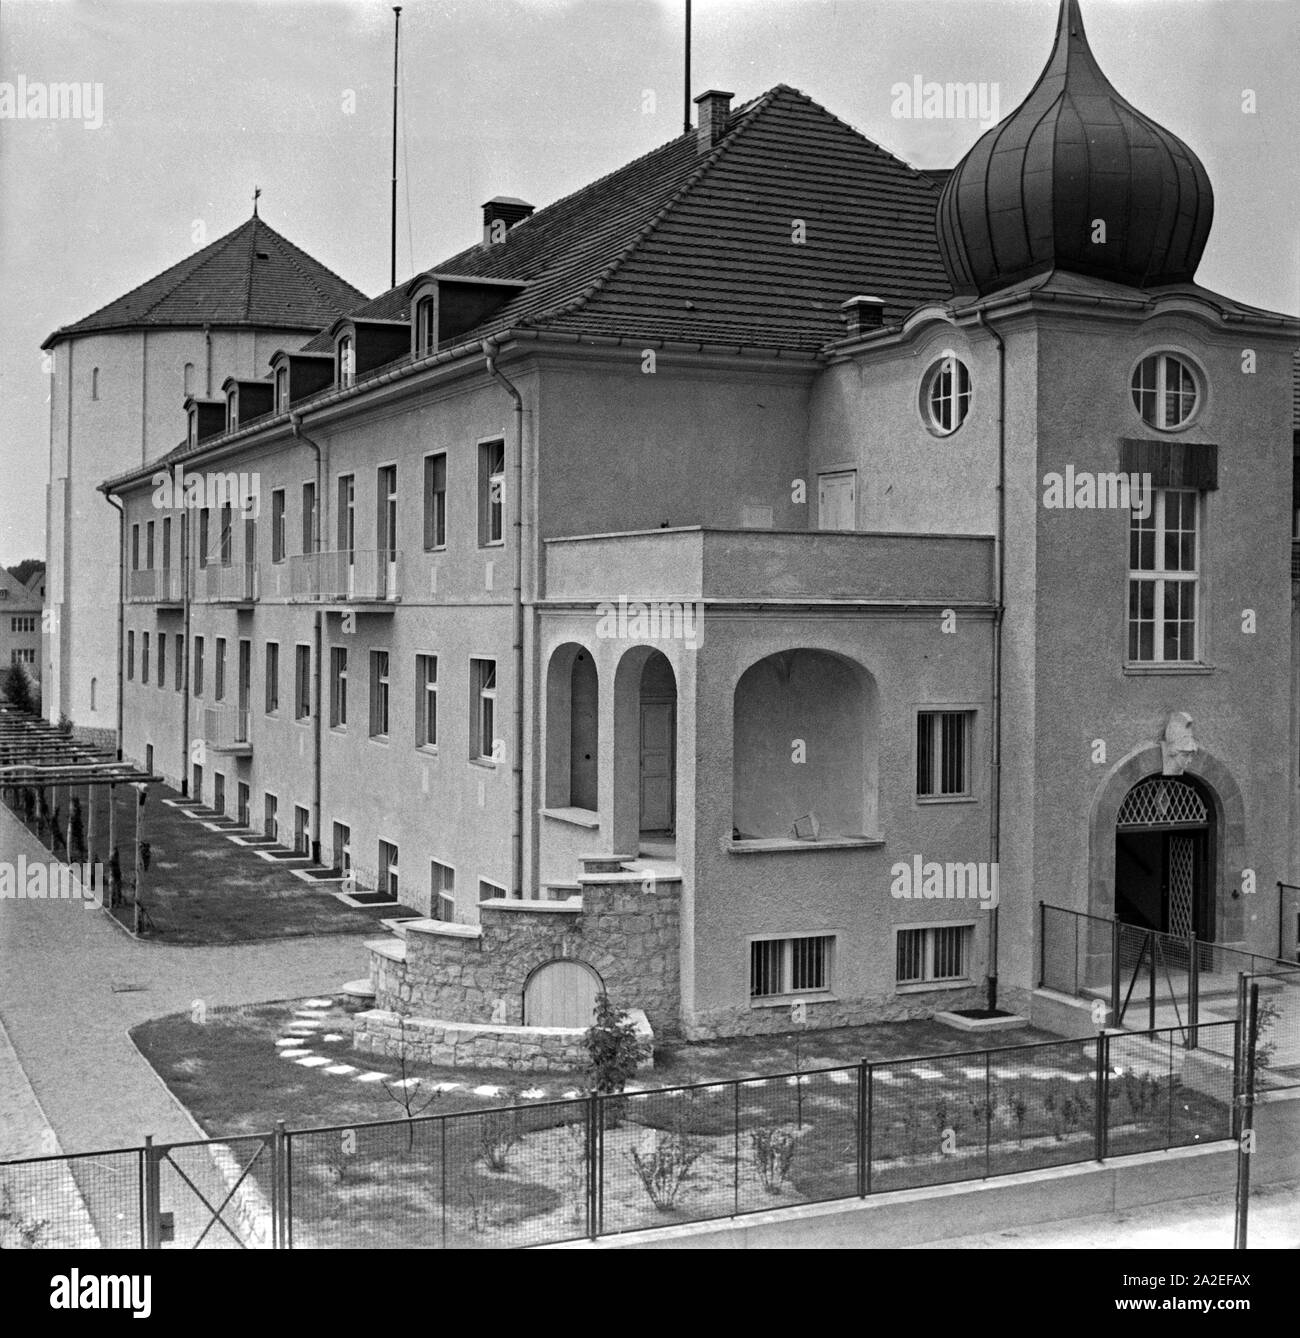 Das Kaiser-Wilhelm-Institut für Physik in Berlin Dahlem, 1930er Jahre. Das Kaiser-Wilhelm-Institut für Physik in Berlin Dahlem, 1930er Jahre. Stockfoto